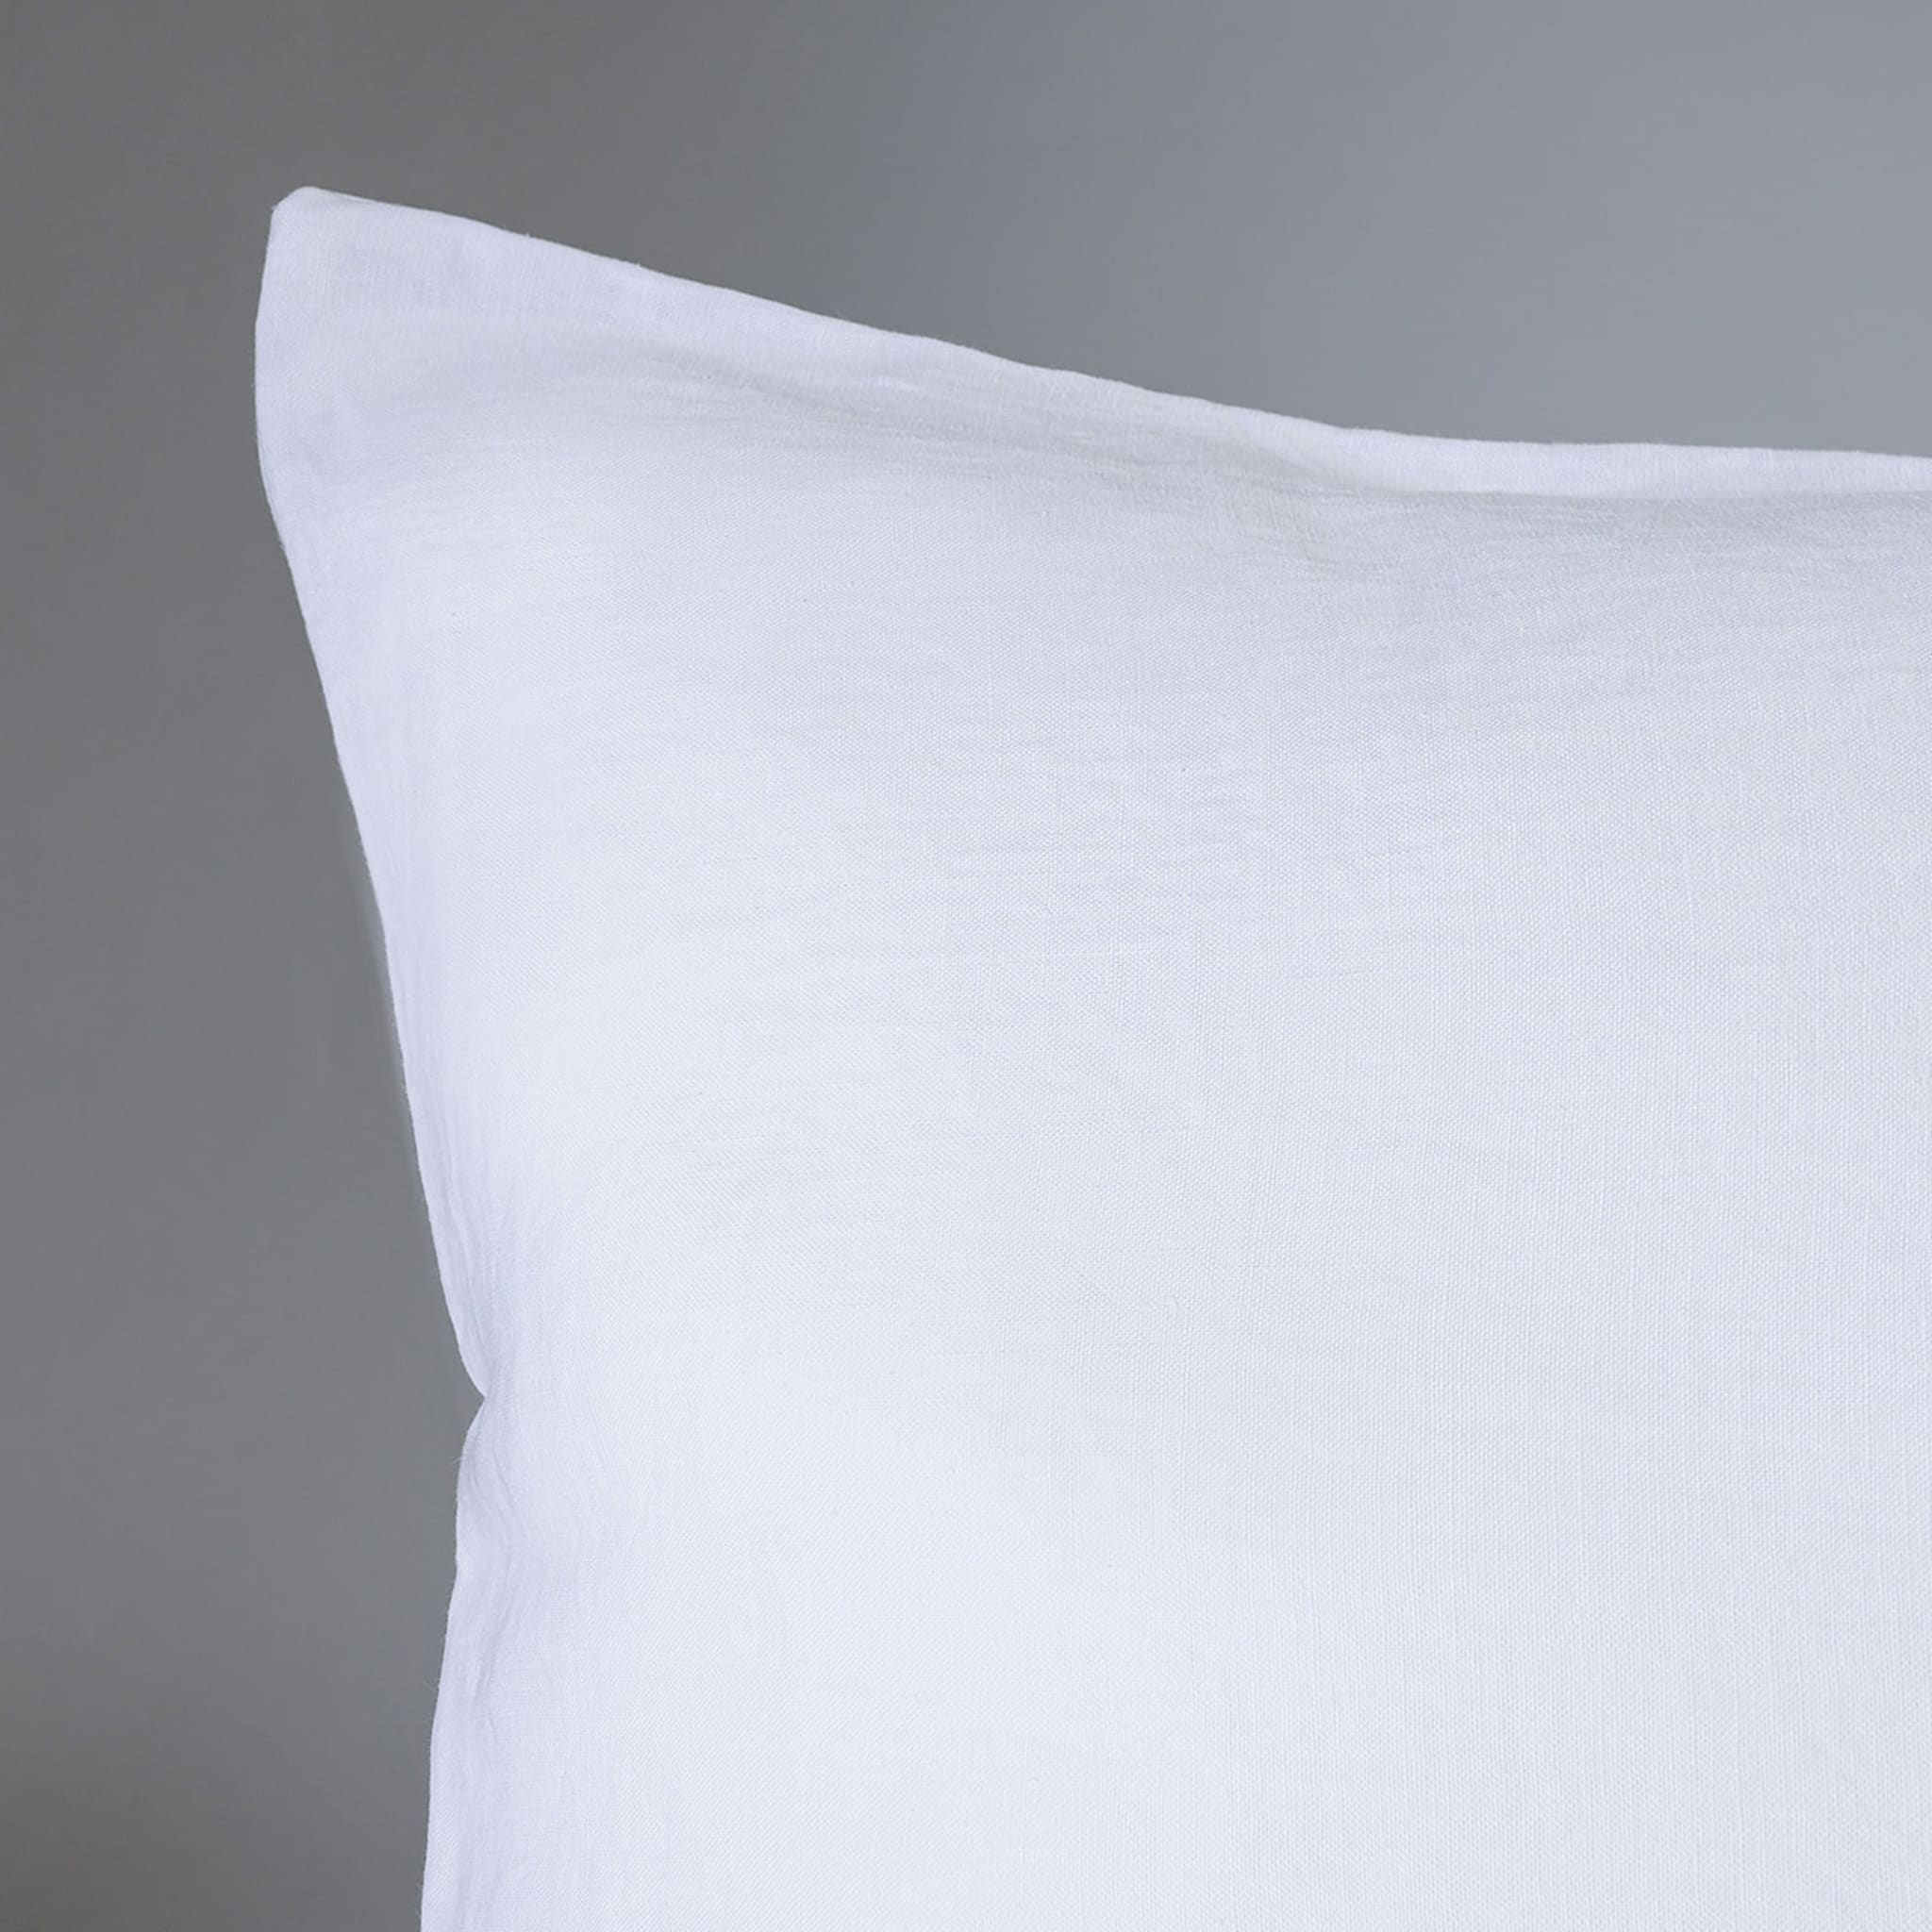 Kanapa White Set of 2 Pillowcases - Alternative view 1